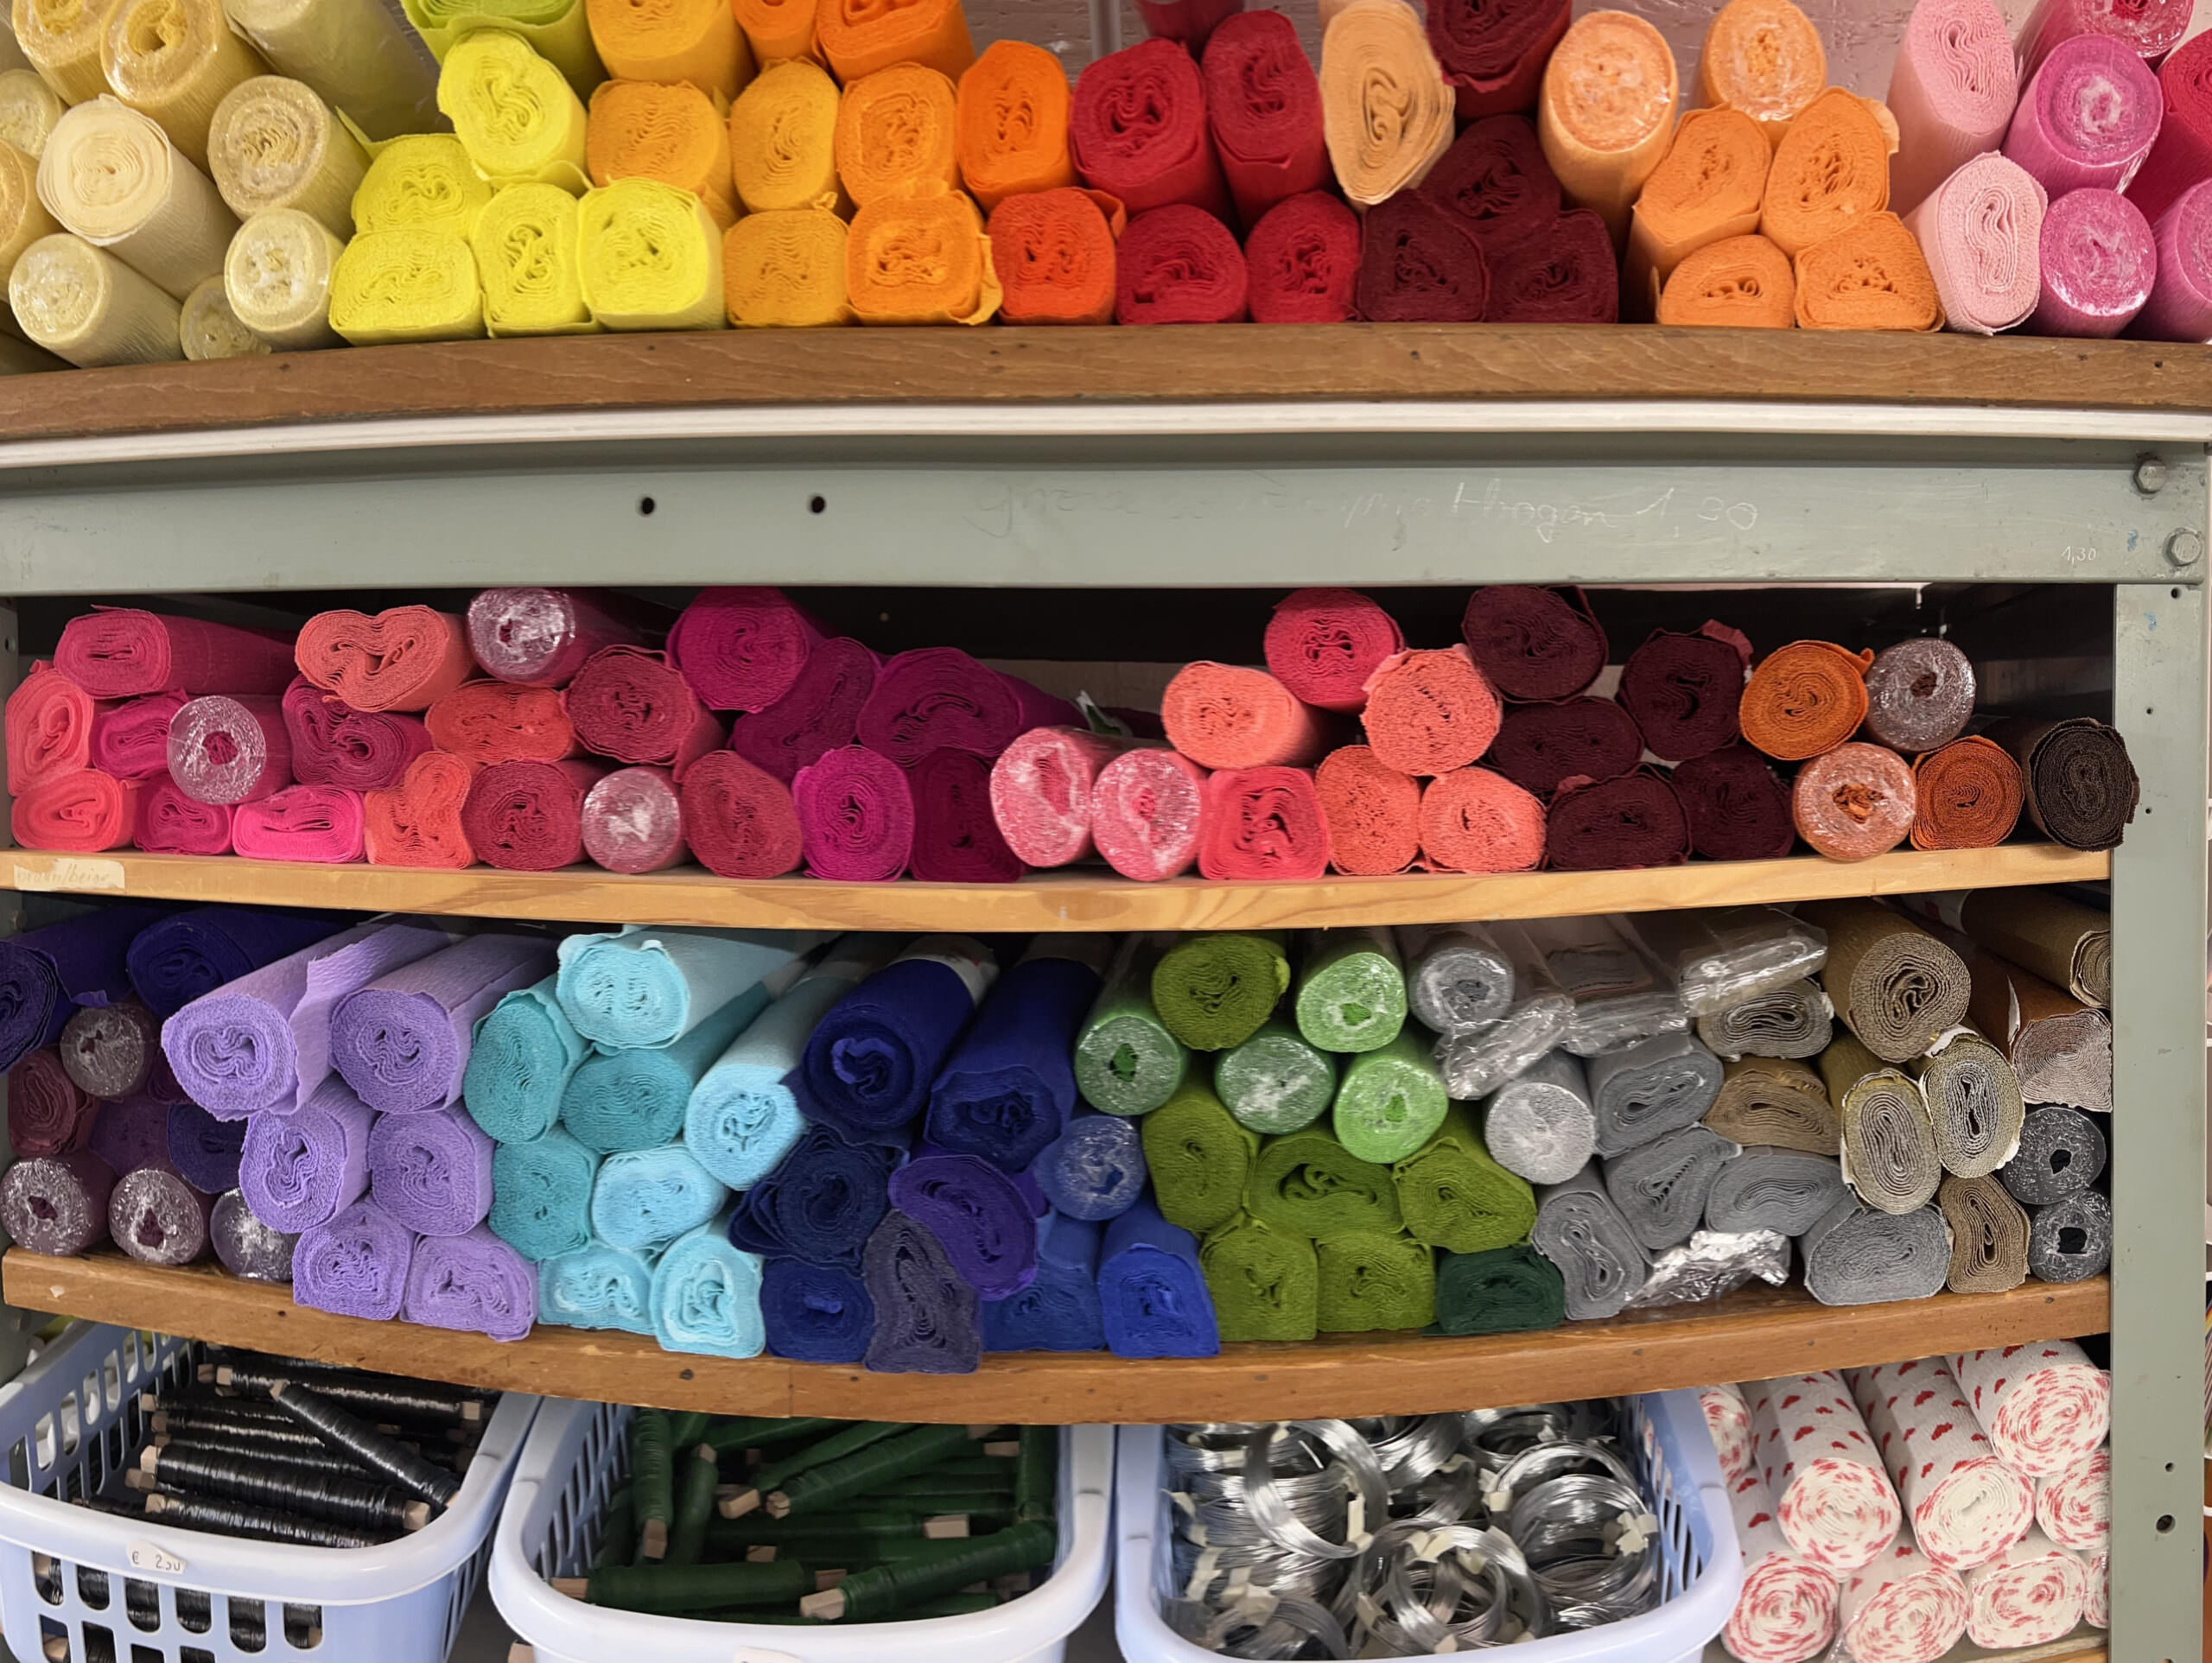 Textilien in verschiedenen Farben